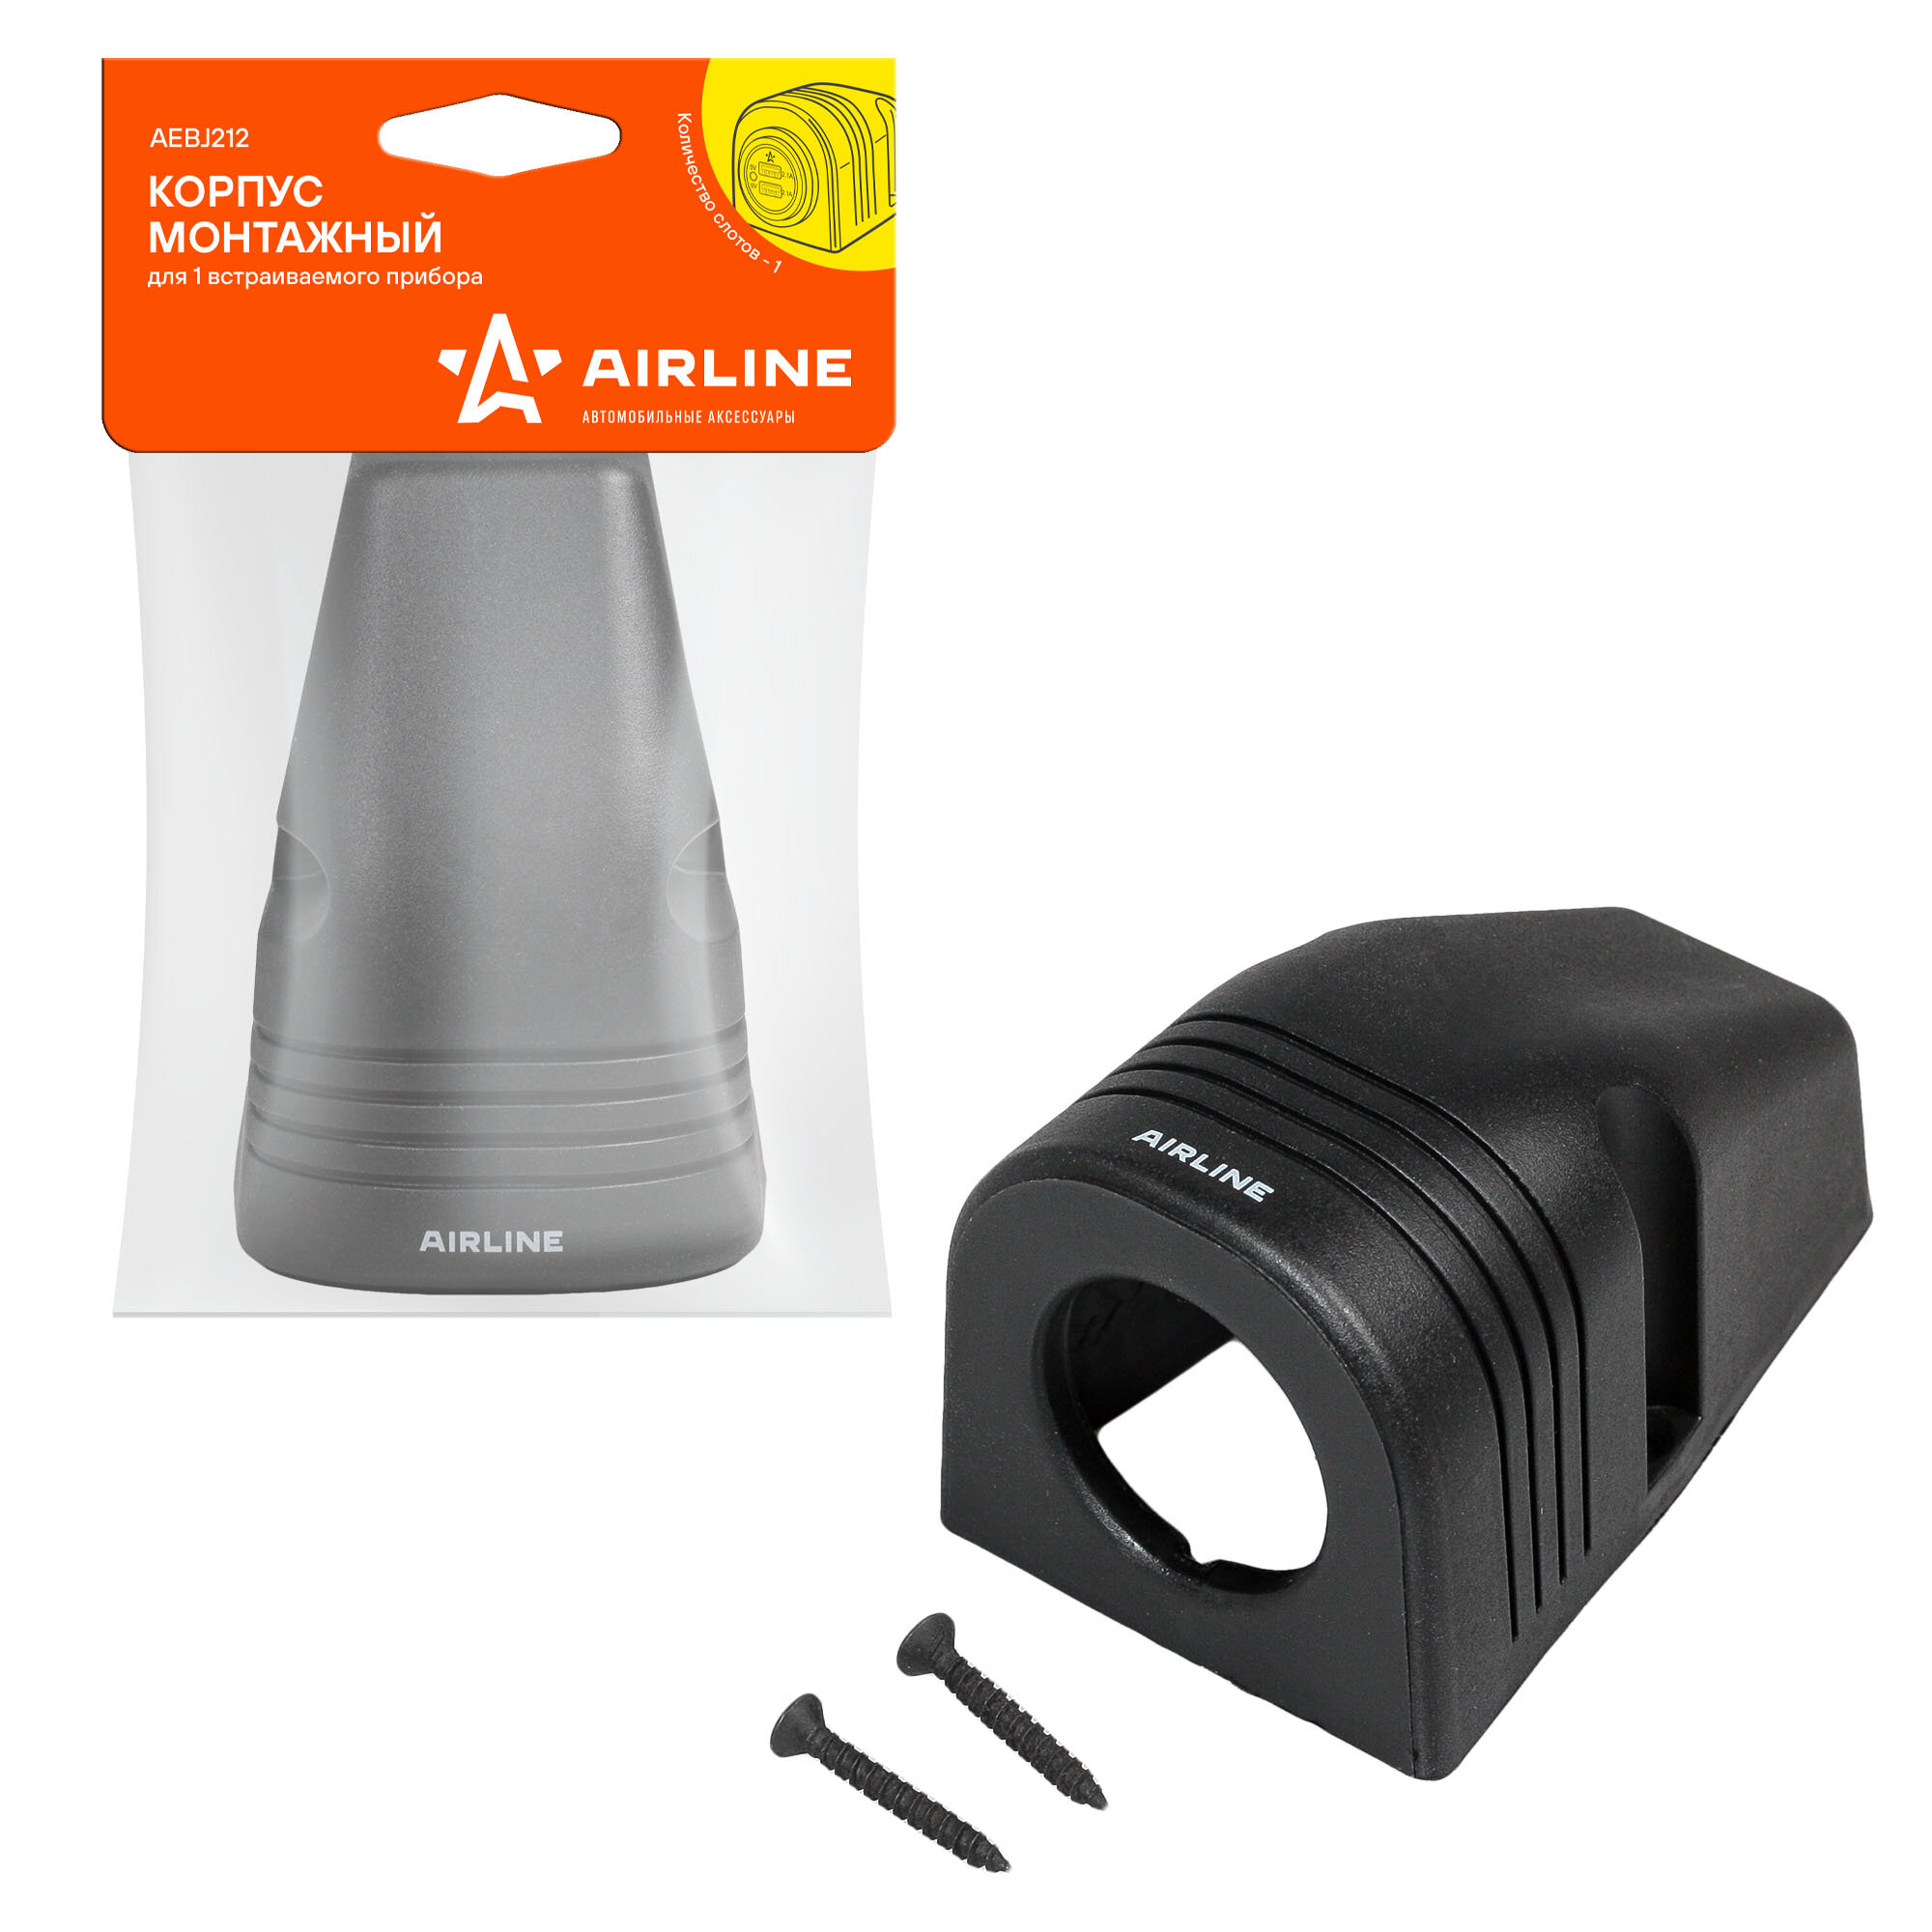 Корпус монтажный для 1 встраиваемого прибора AEBJ212 AIRLINE